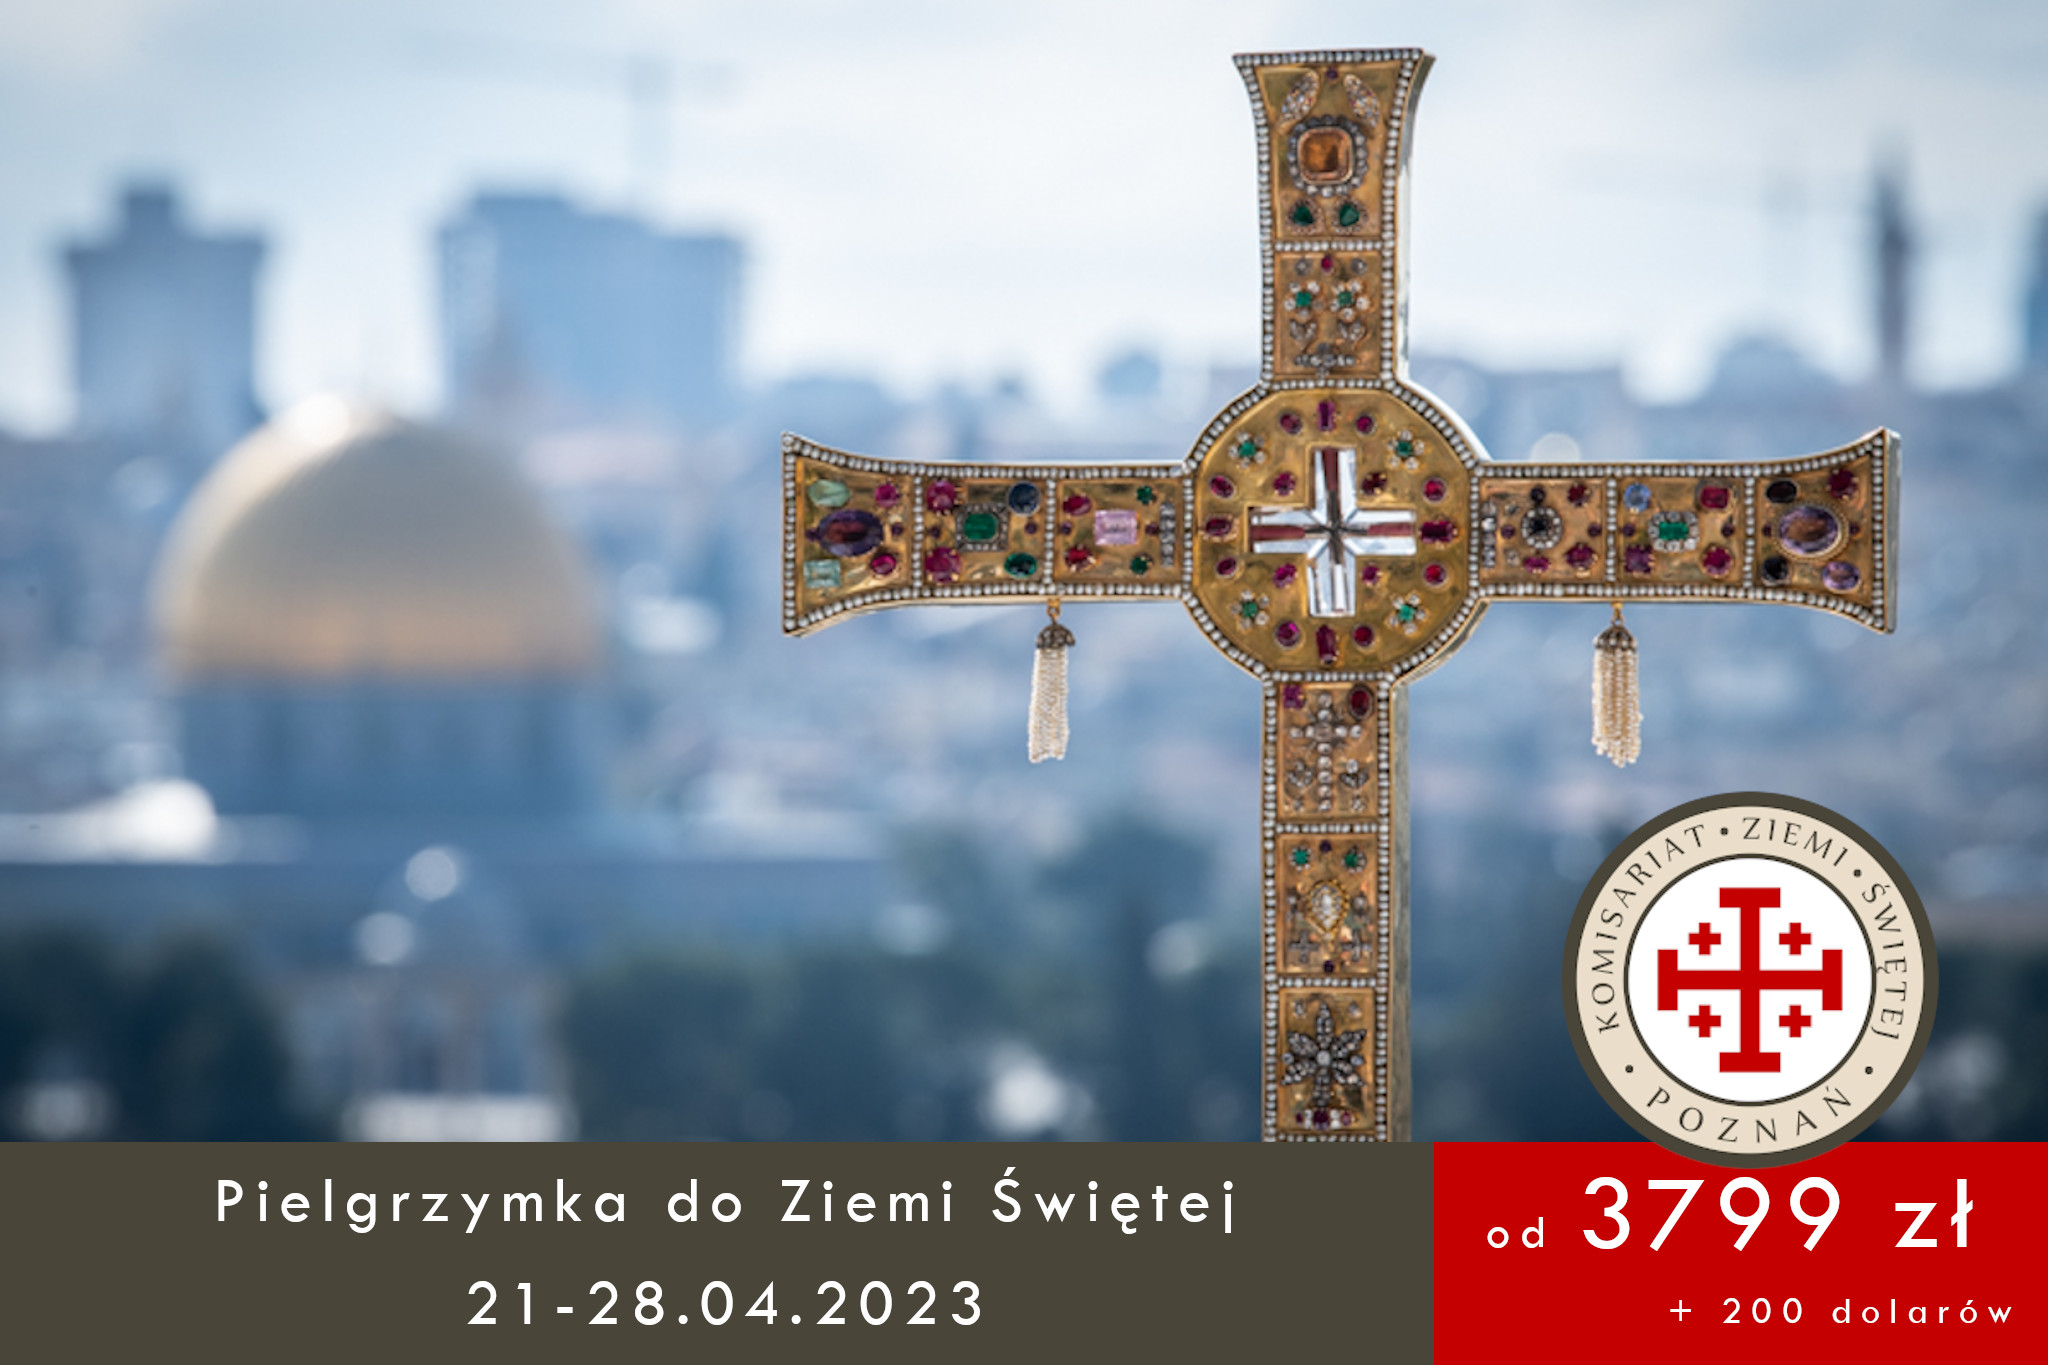 You are currently viewing Pielgrzymka do Ziemi Świętej 21.04.2023 – 28.04.2023